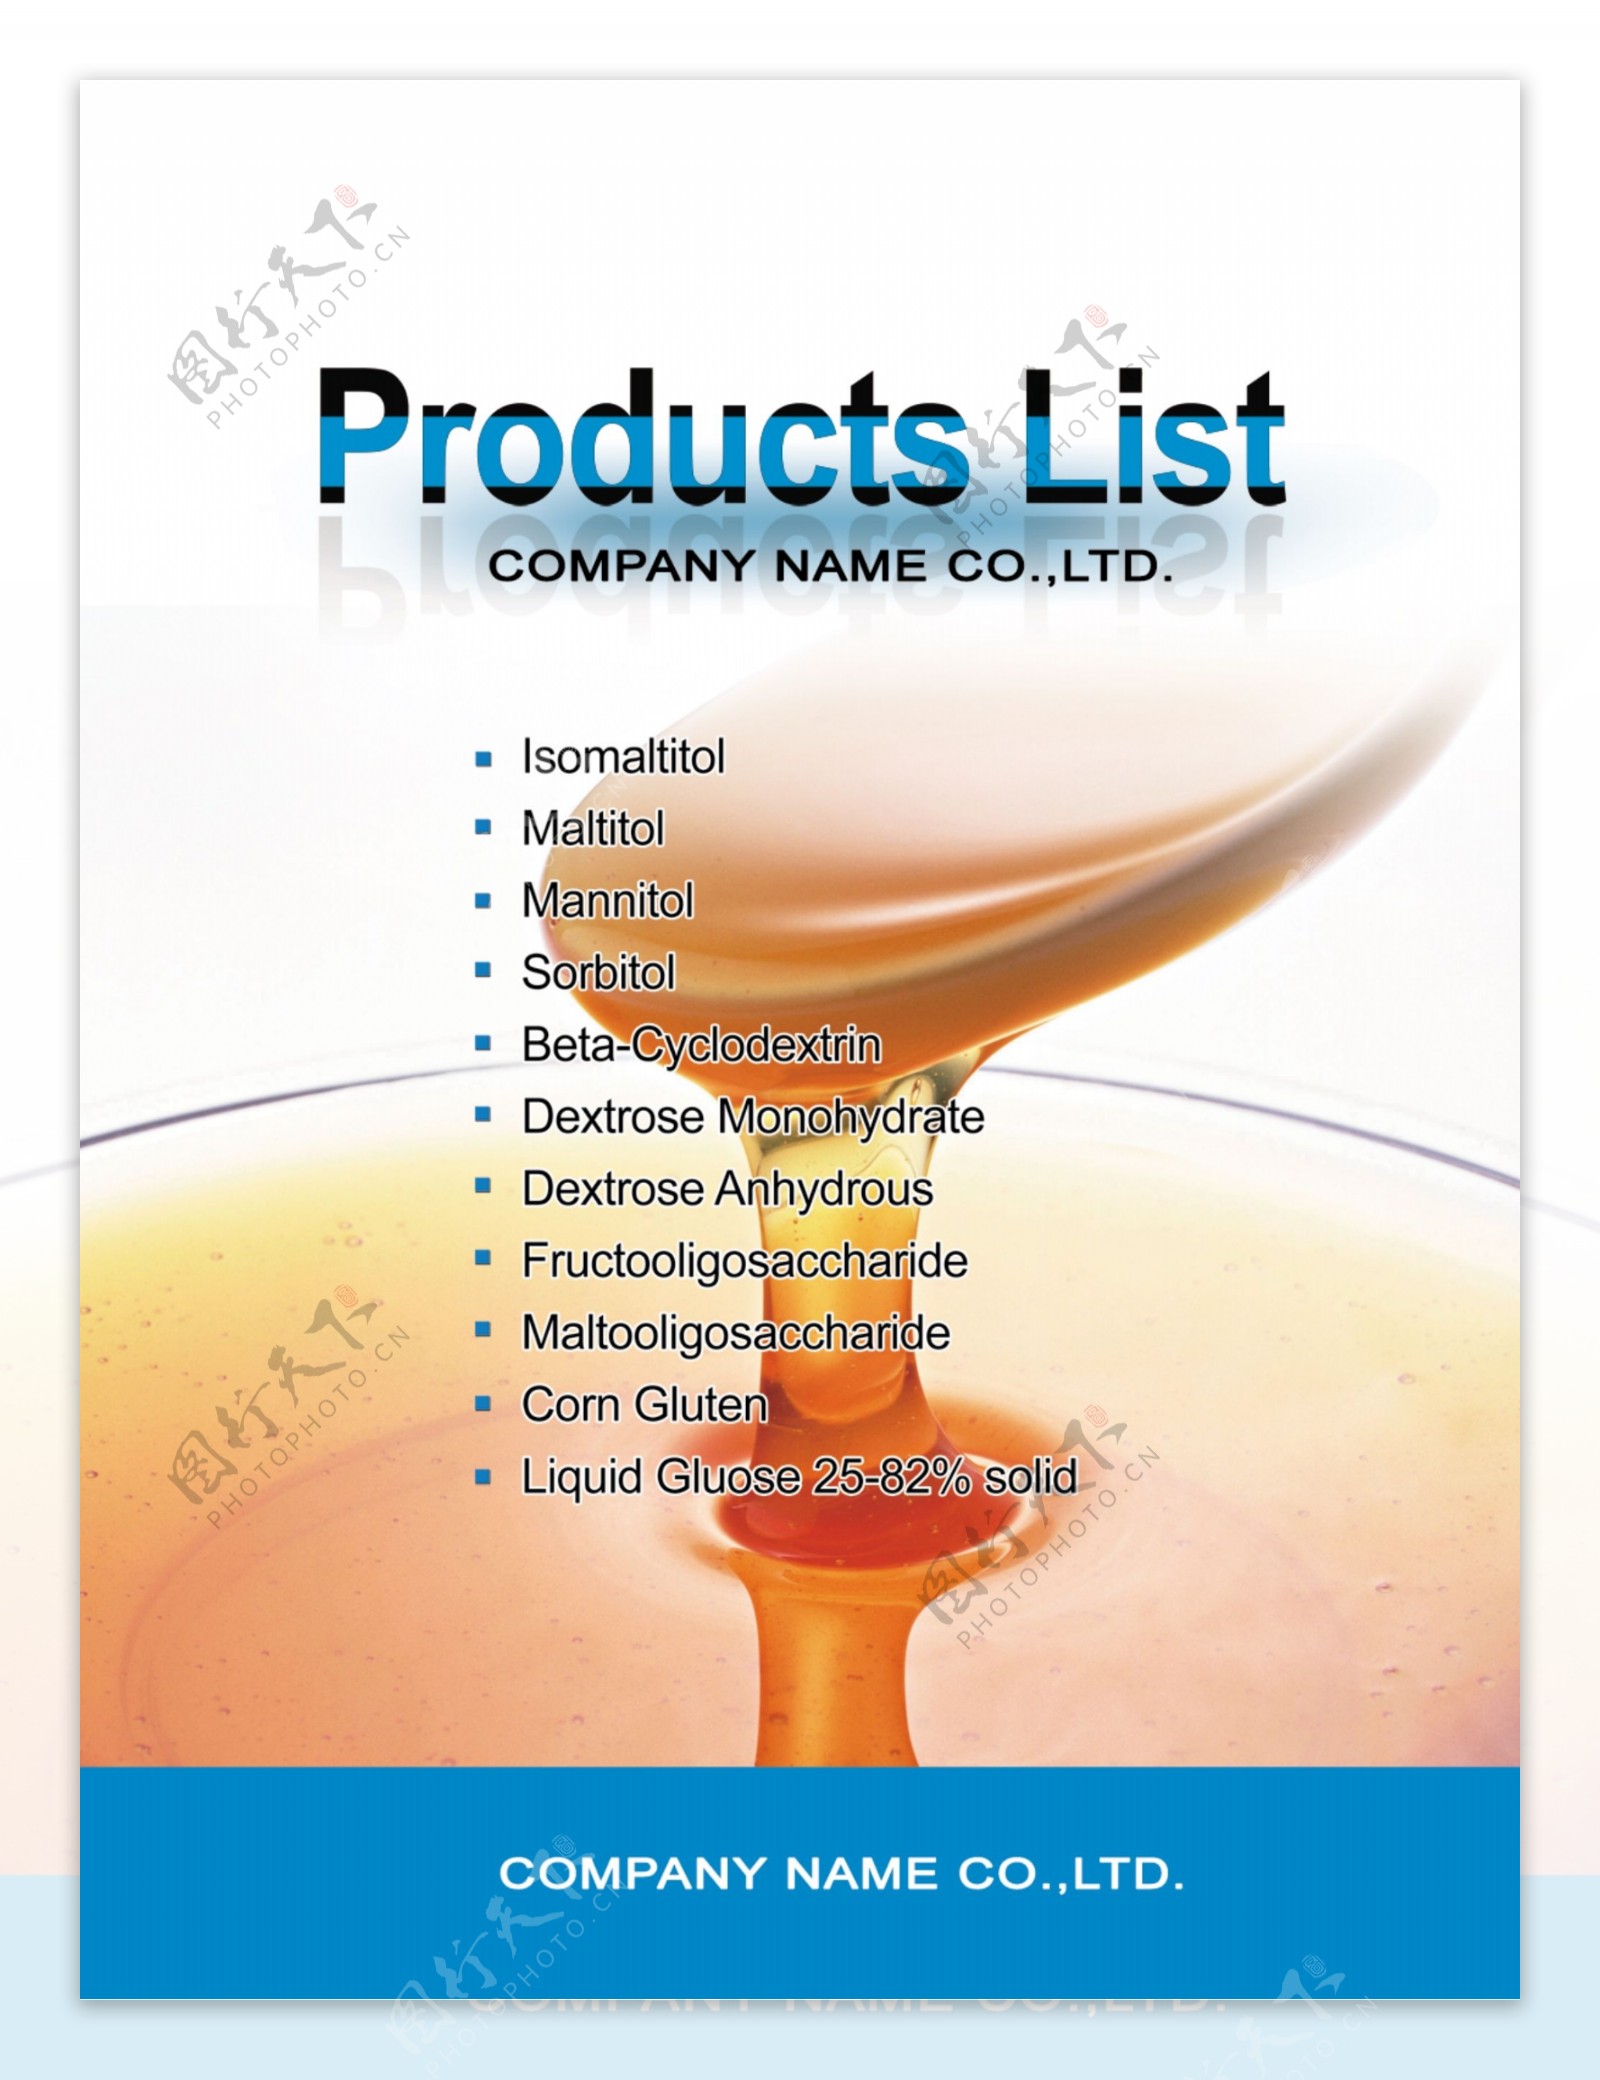 公司产品列表展示图板版式设计